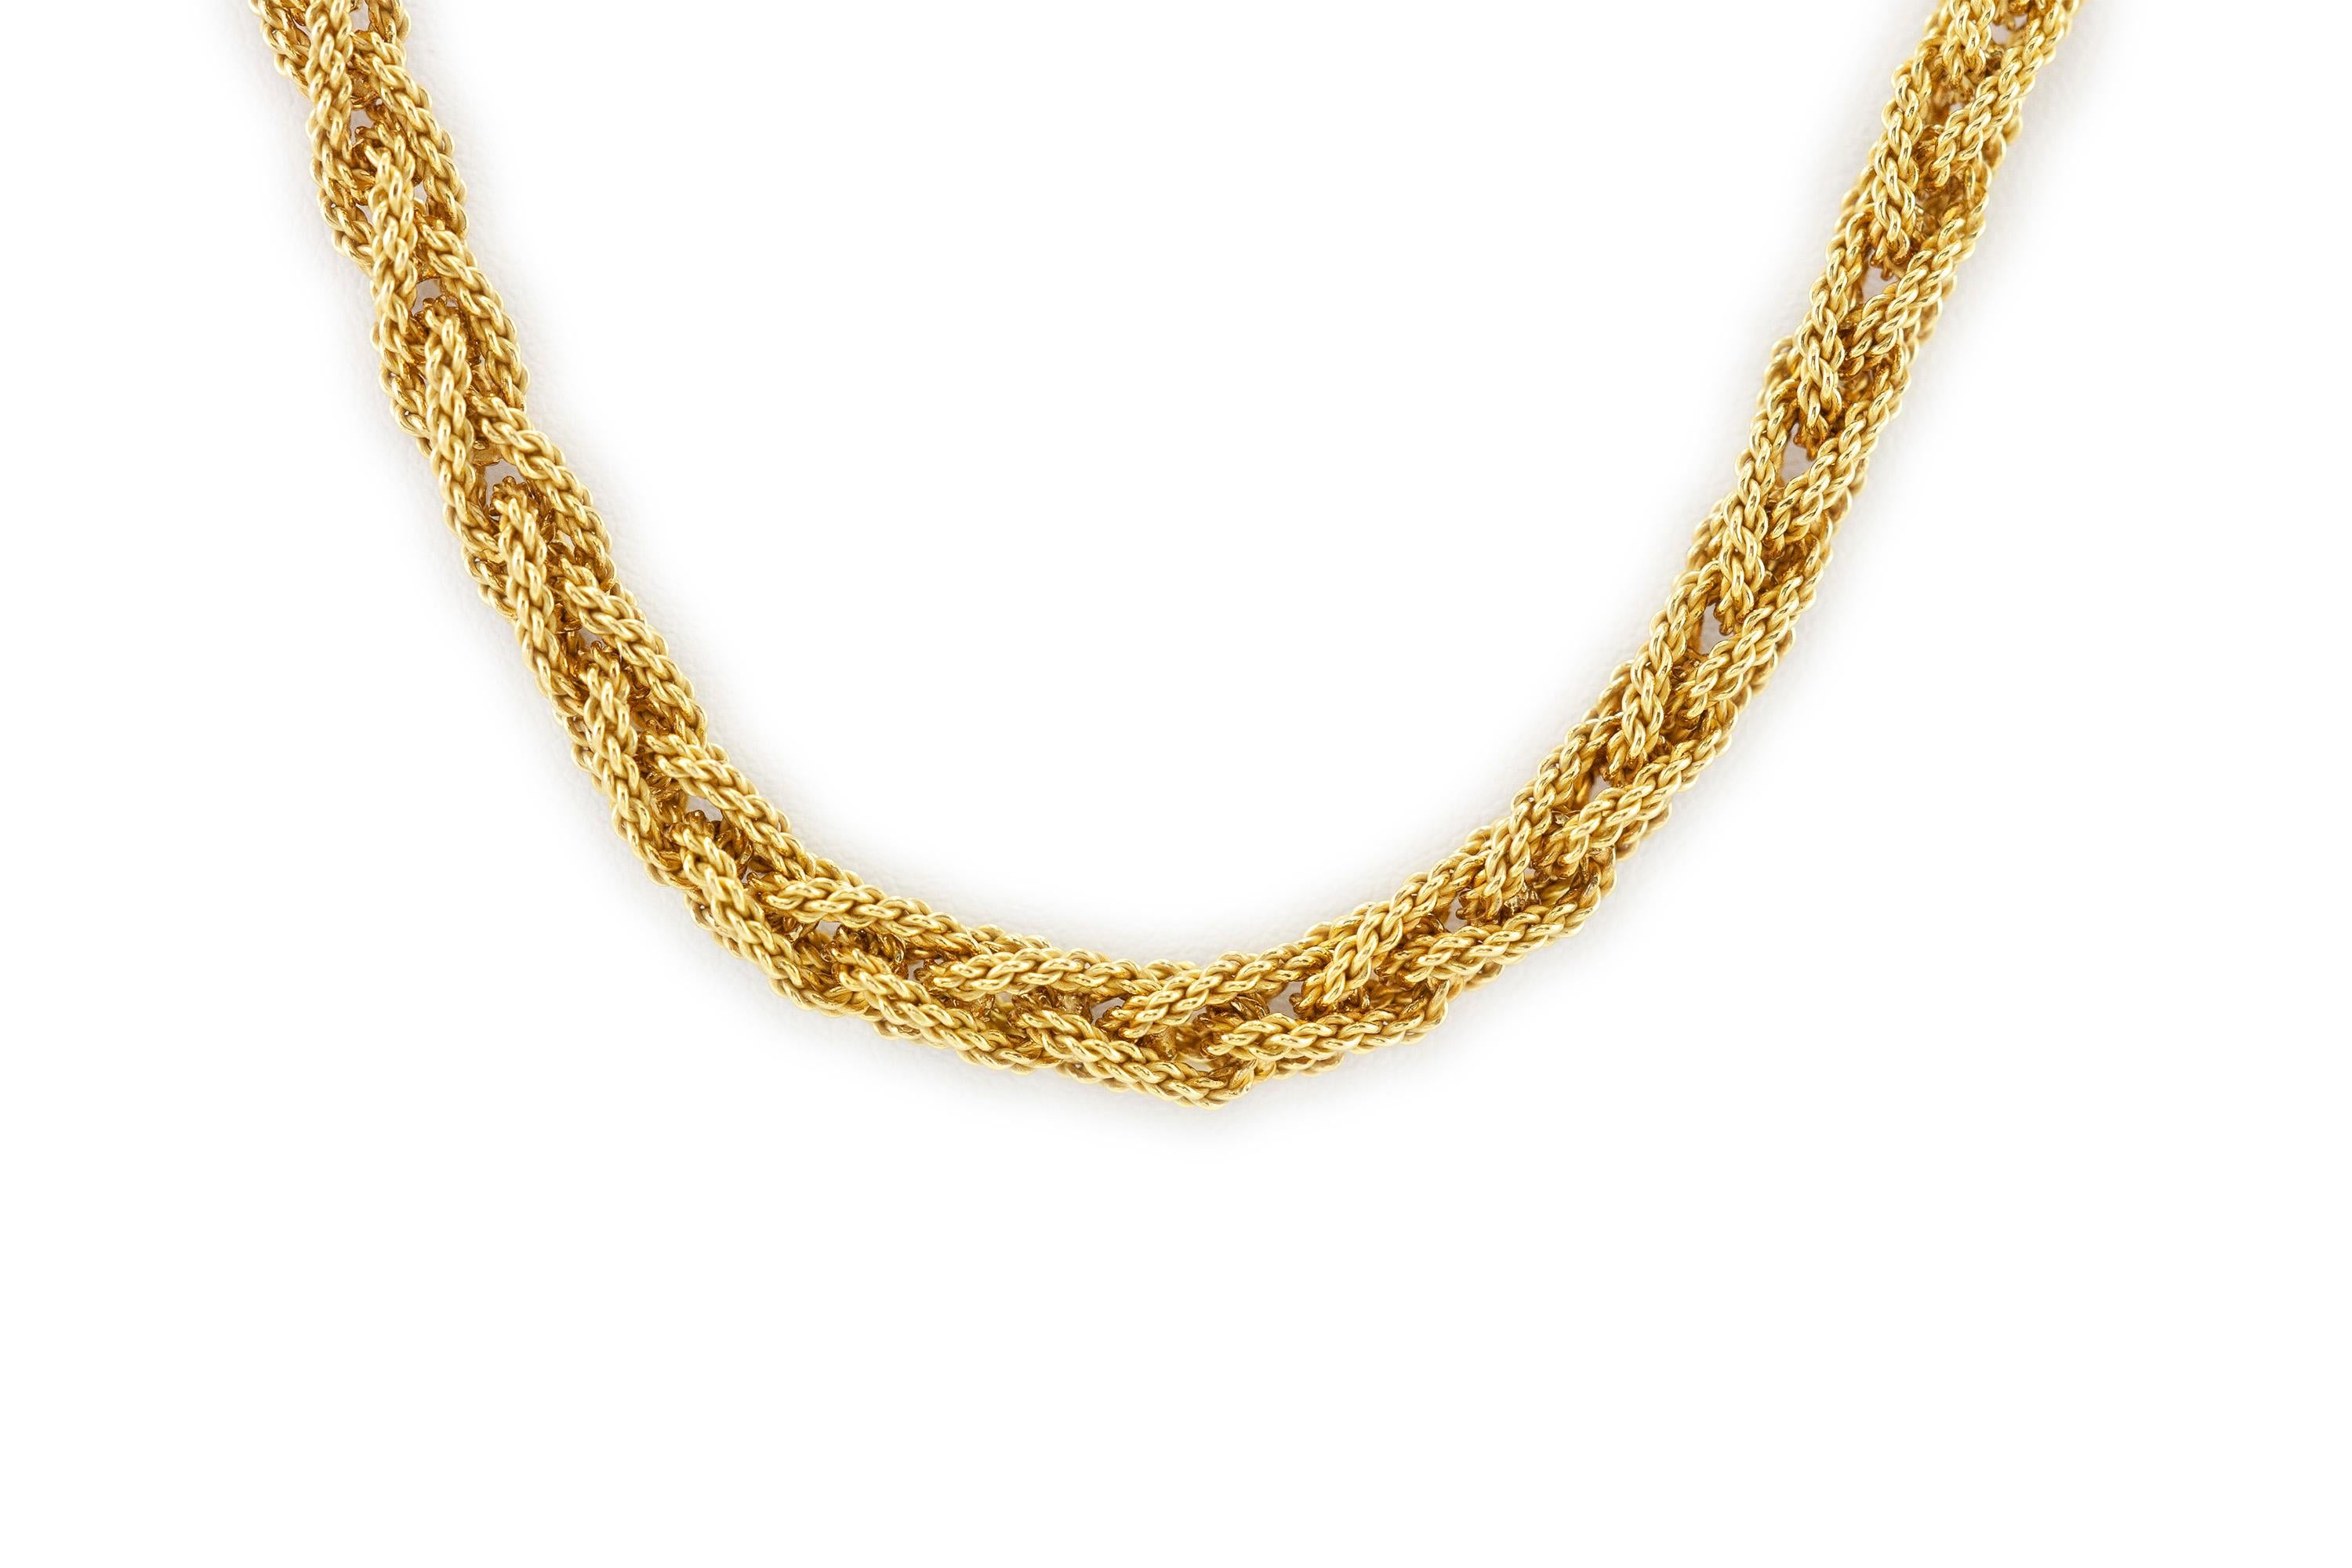 Die schöne Halskette ist fein aus 18 Karat Gold gefertigt.
Er wiegt insgesamt etwa 121,3 Gramm und ist 36 Zentimeter lang.
Um 1960.